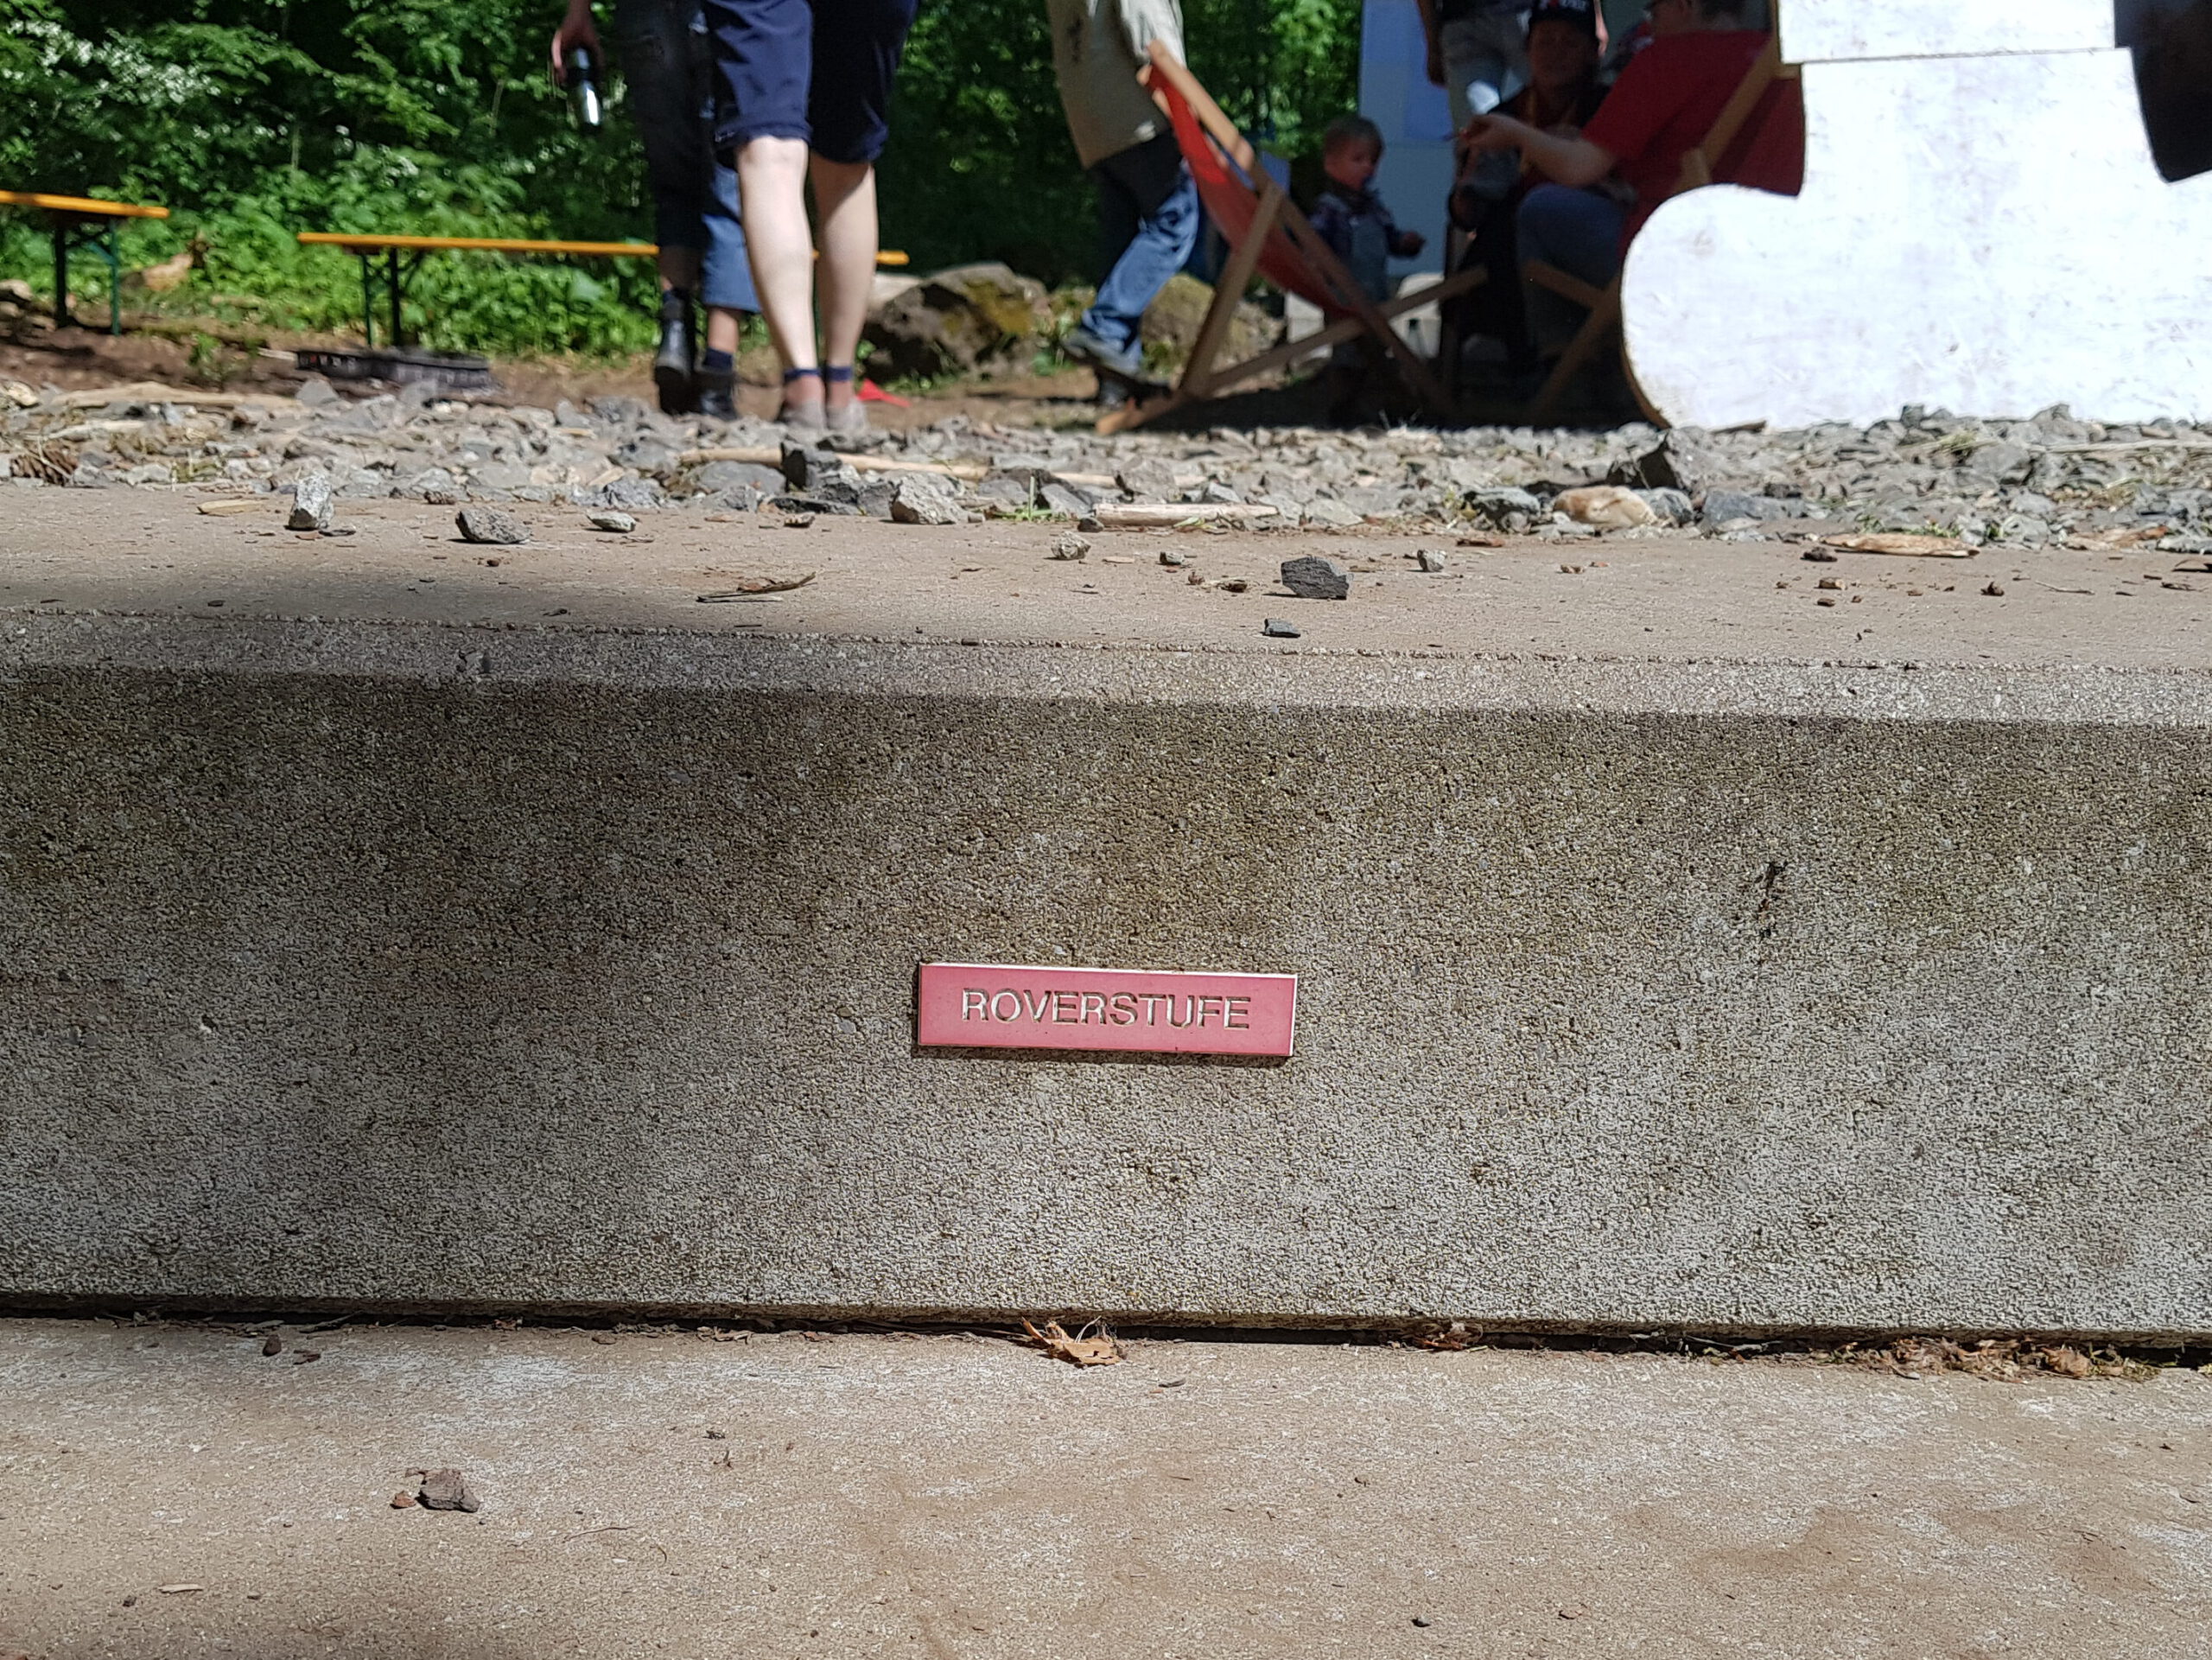 Eine Stufe aus Beton auf der eine rote Plakette mit der Aufschrift "Roverstufe" angebracht ist.